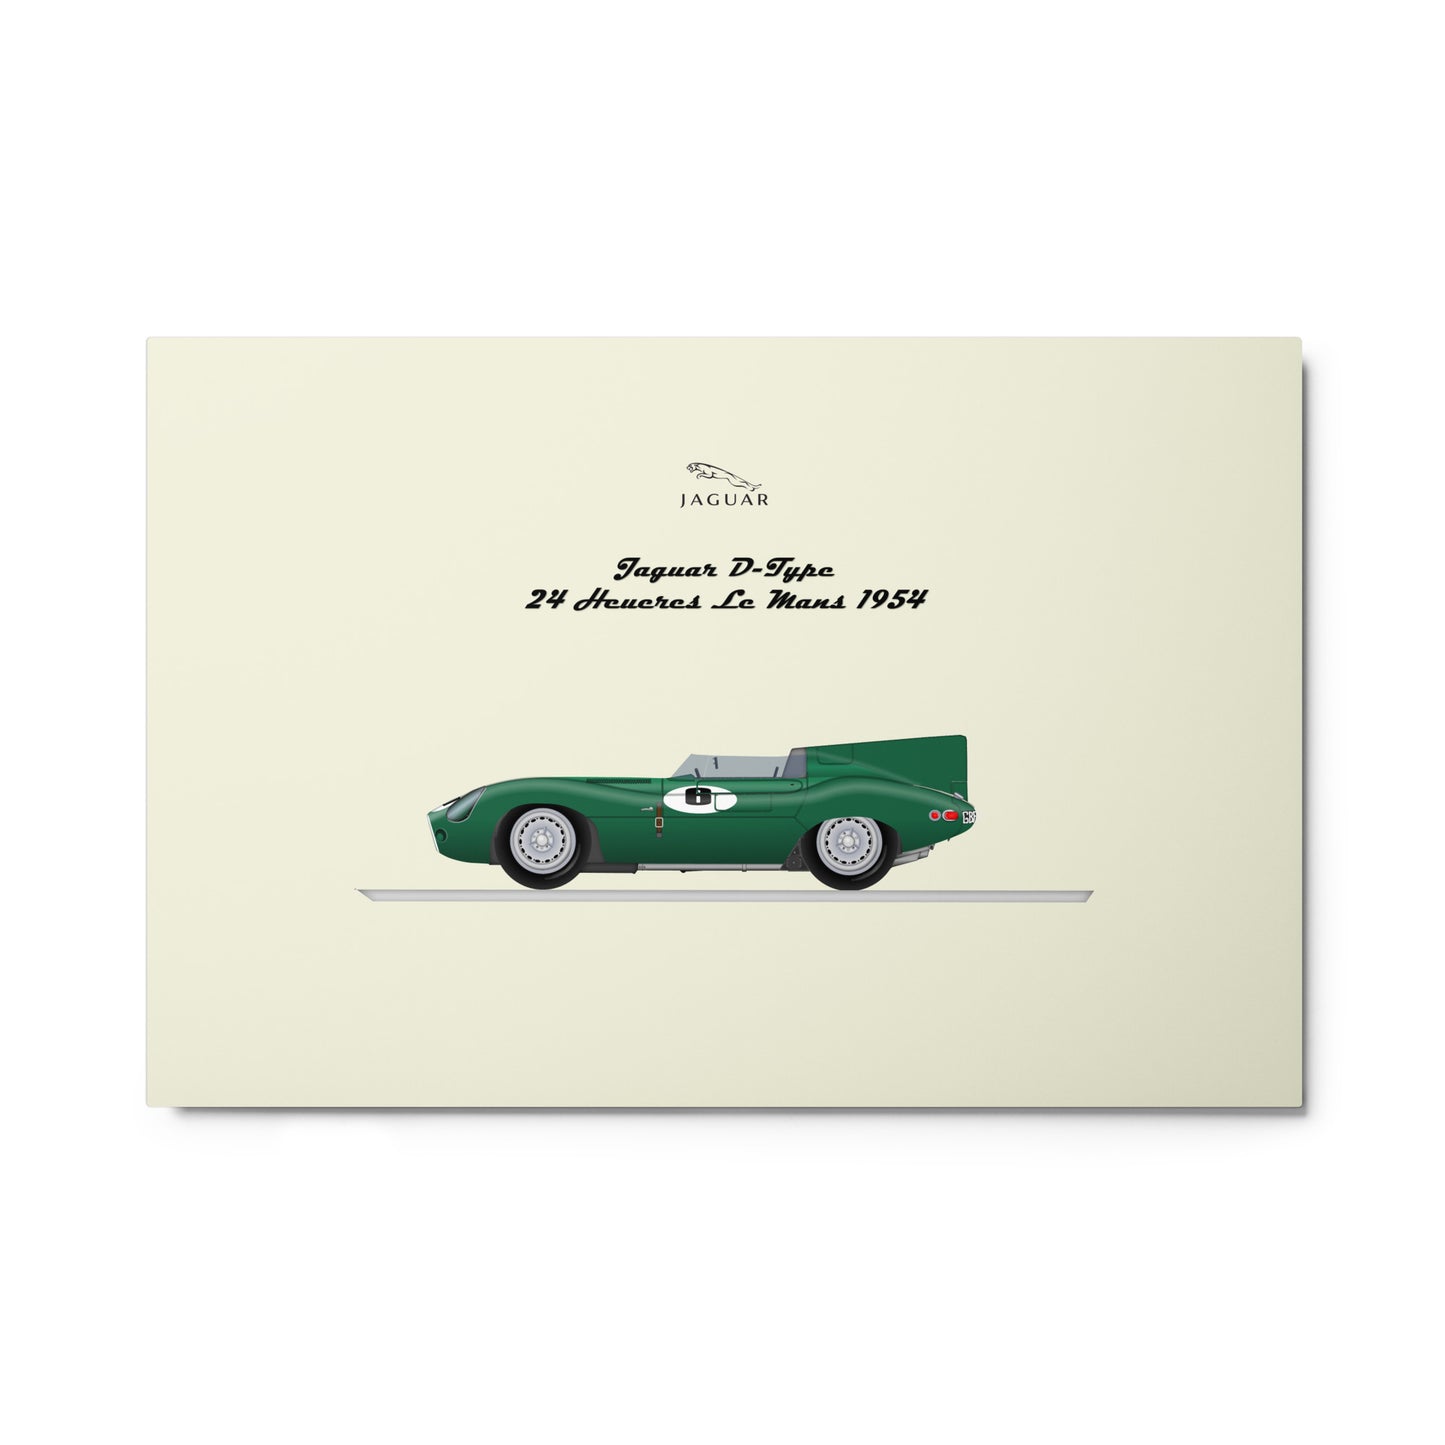 Car-WSC Jaguar D-Type Le Mans 1954 By Gianfranco Lanini